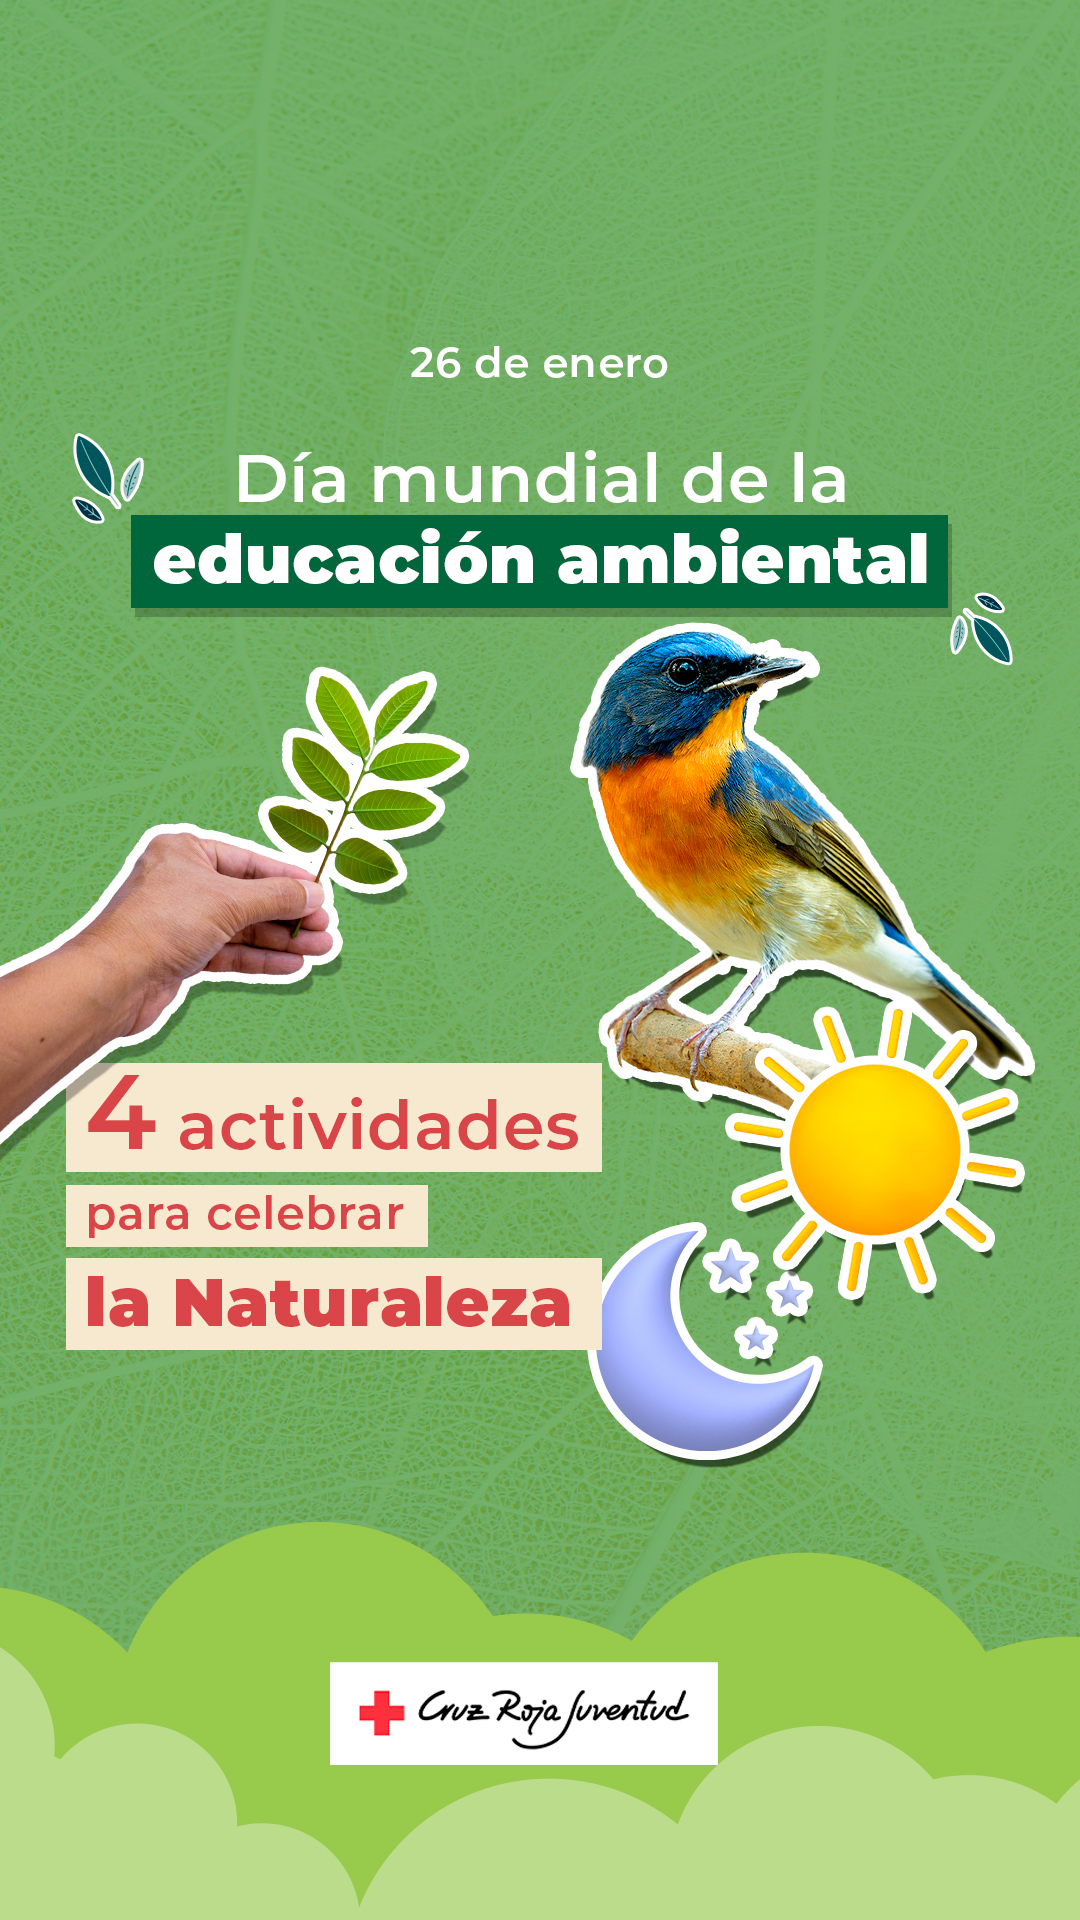 Educación ambiental para una sociedad más sostenible y respetuosa